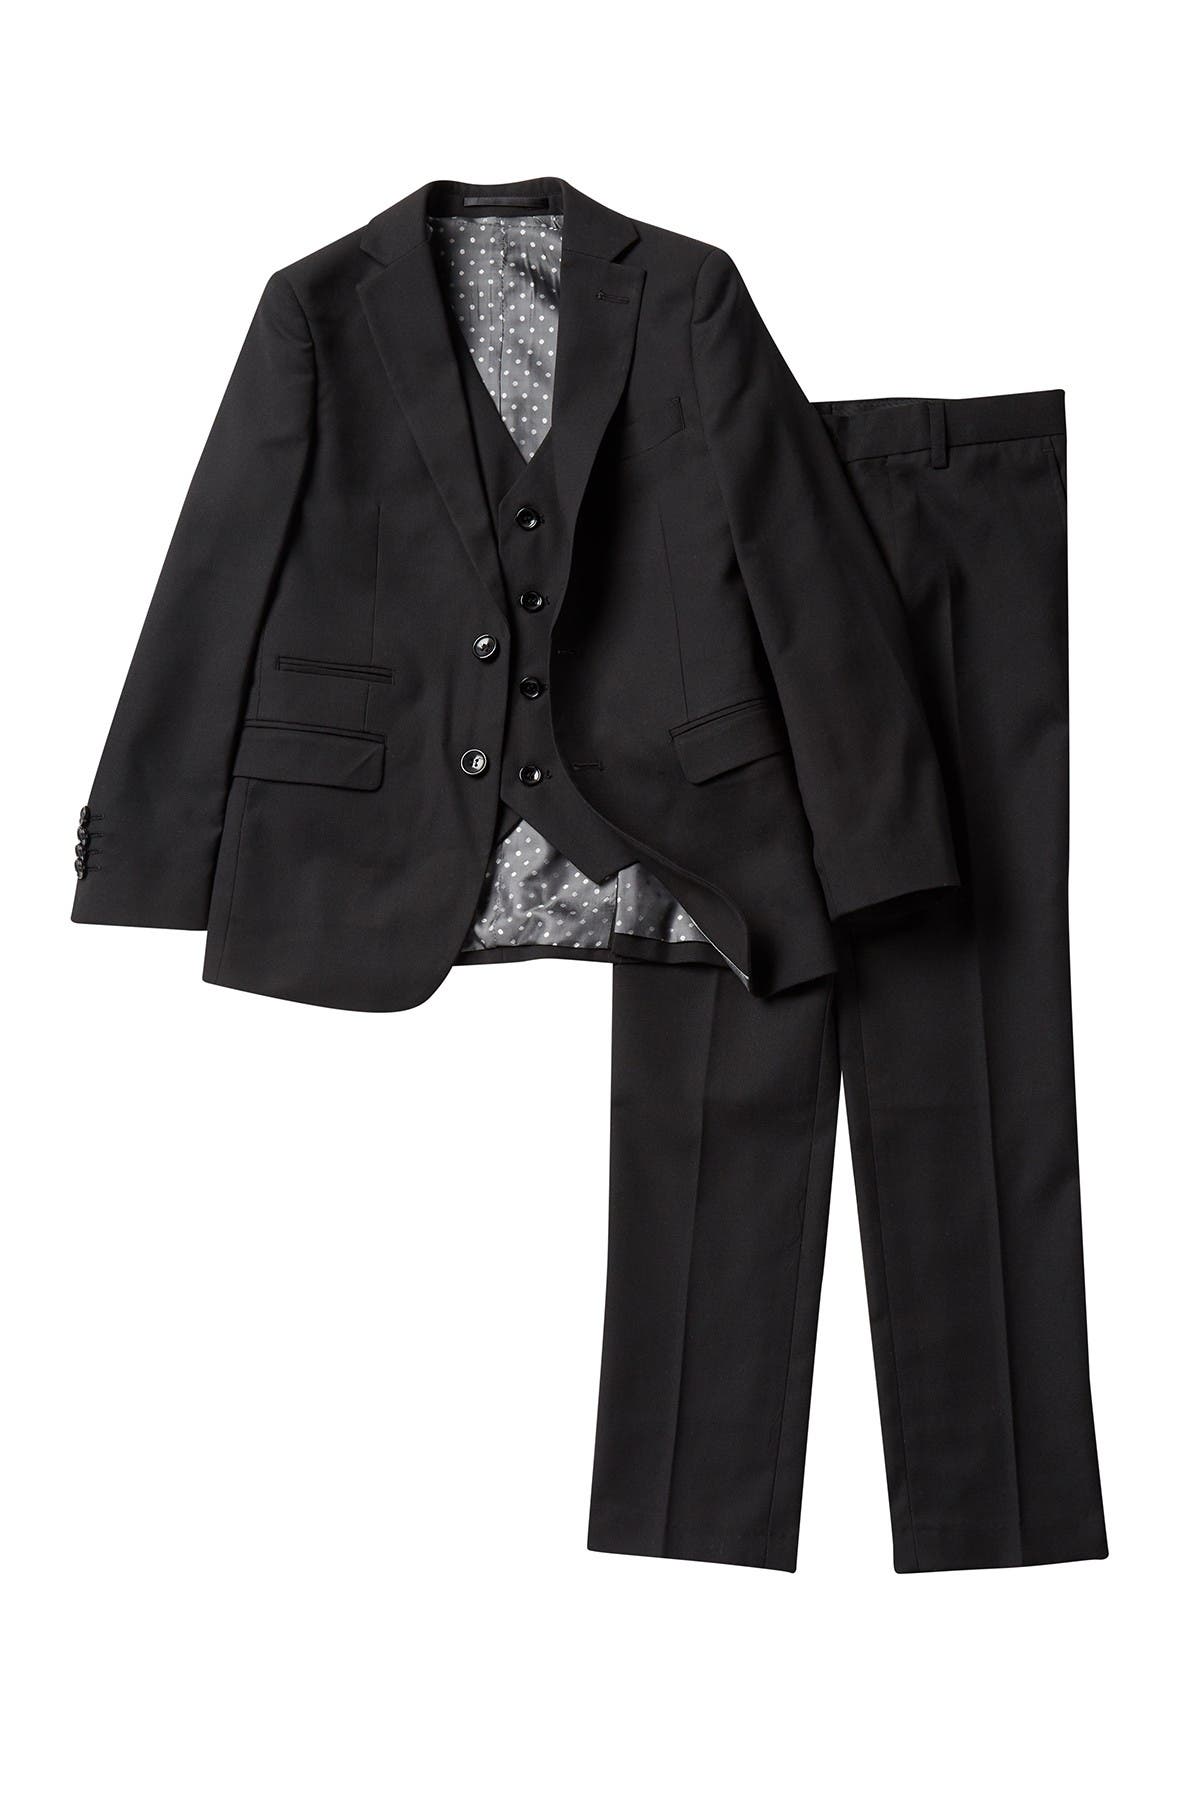 Formal Kids Wear Dressy suit for children Boys 5 Piece Mat Black Suit